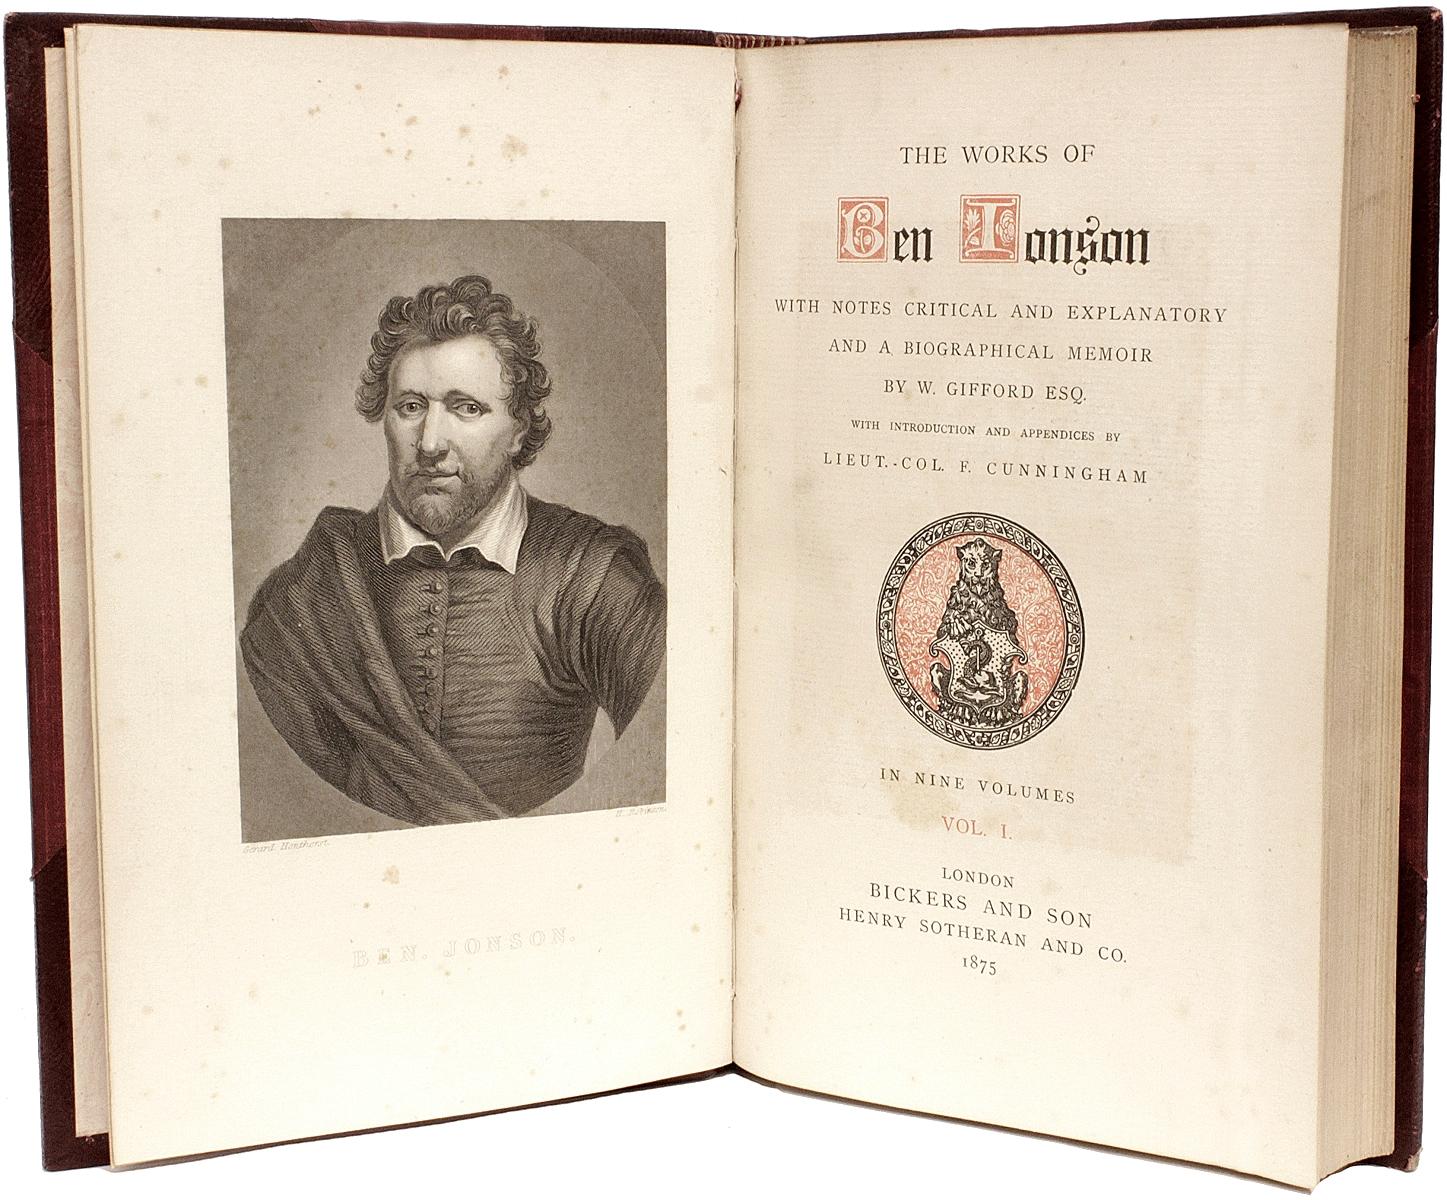 Auteur : JONSON, Ben. 

Titre : Les oeuvres de Ben Jonson.

Éditeur : Londres : Bickers & Son, 1875.

9 vol., 9